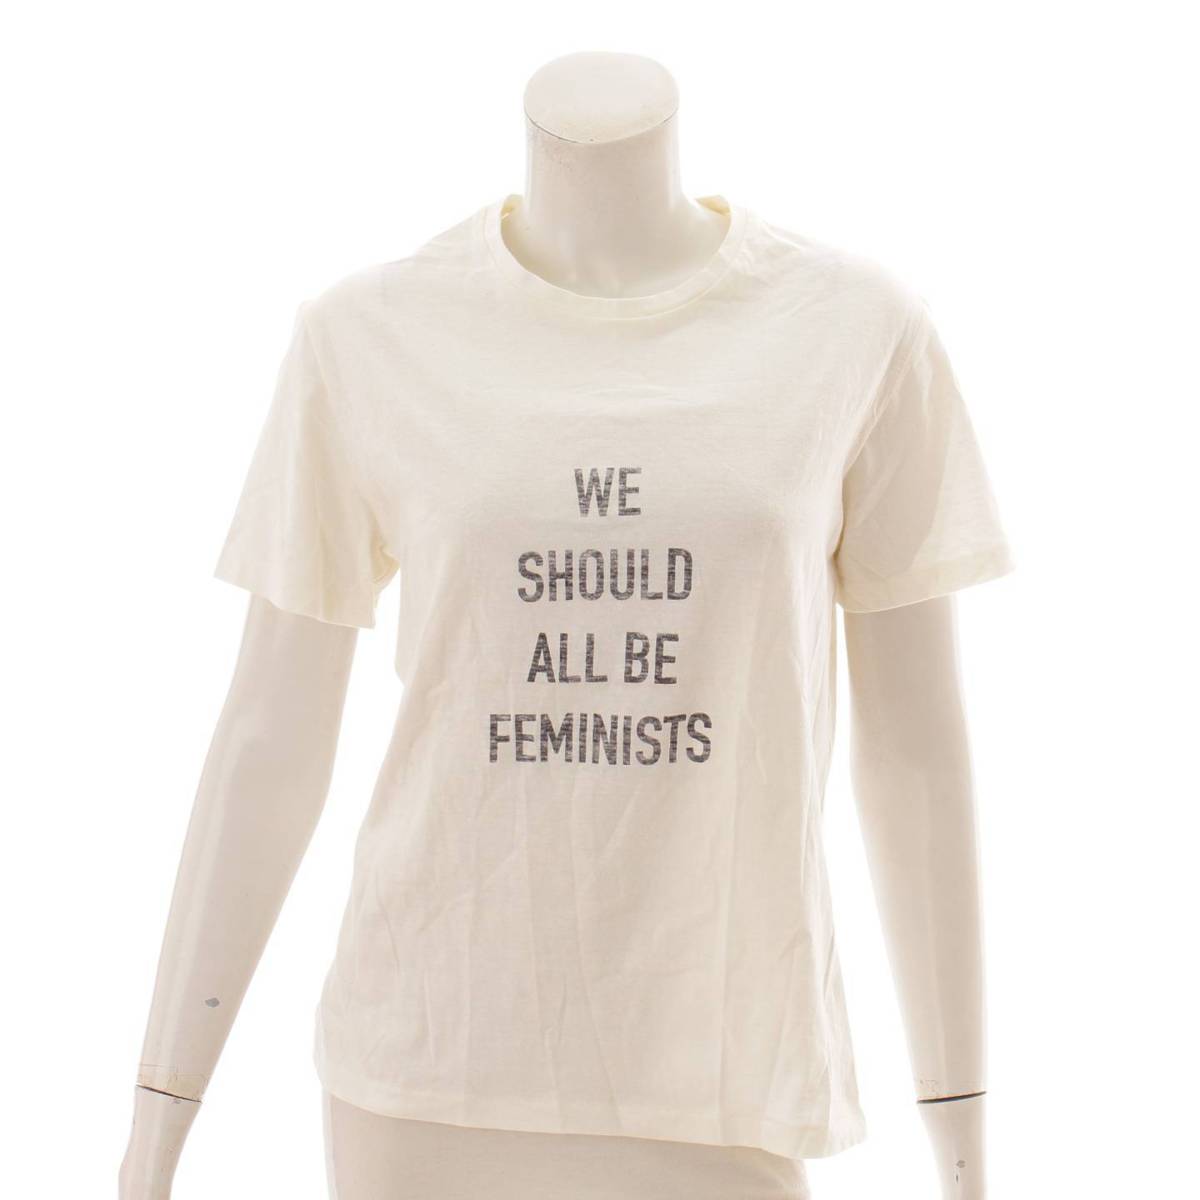 クリスチャン ディオール(Christian Dior) We Should All Be Feminists 半袖 Tシャツ カットソー  7E23503TA428 アイボリー XS